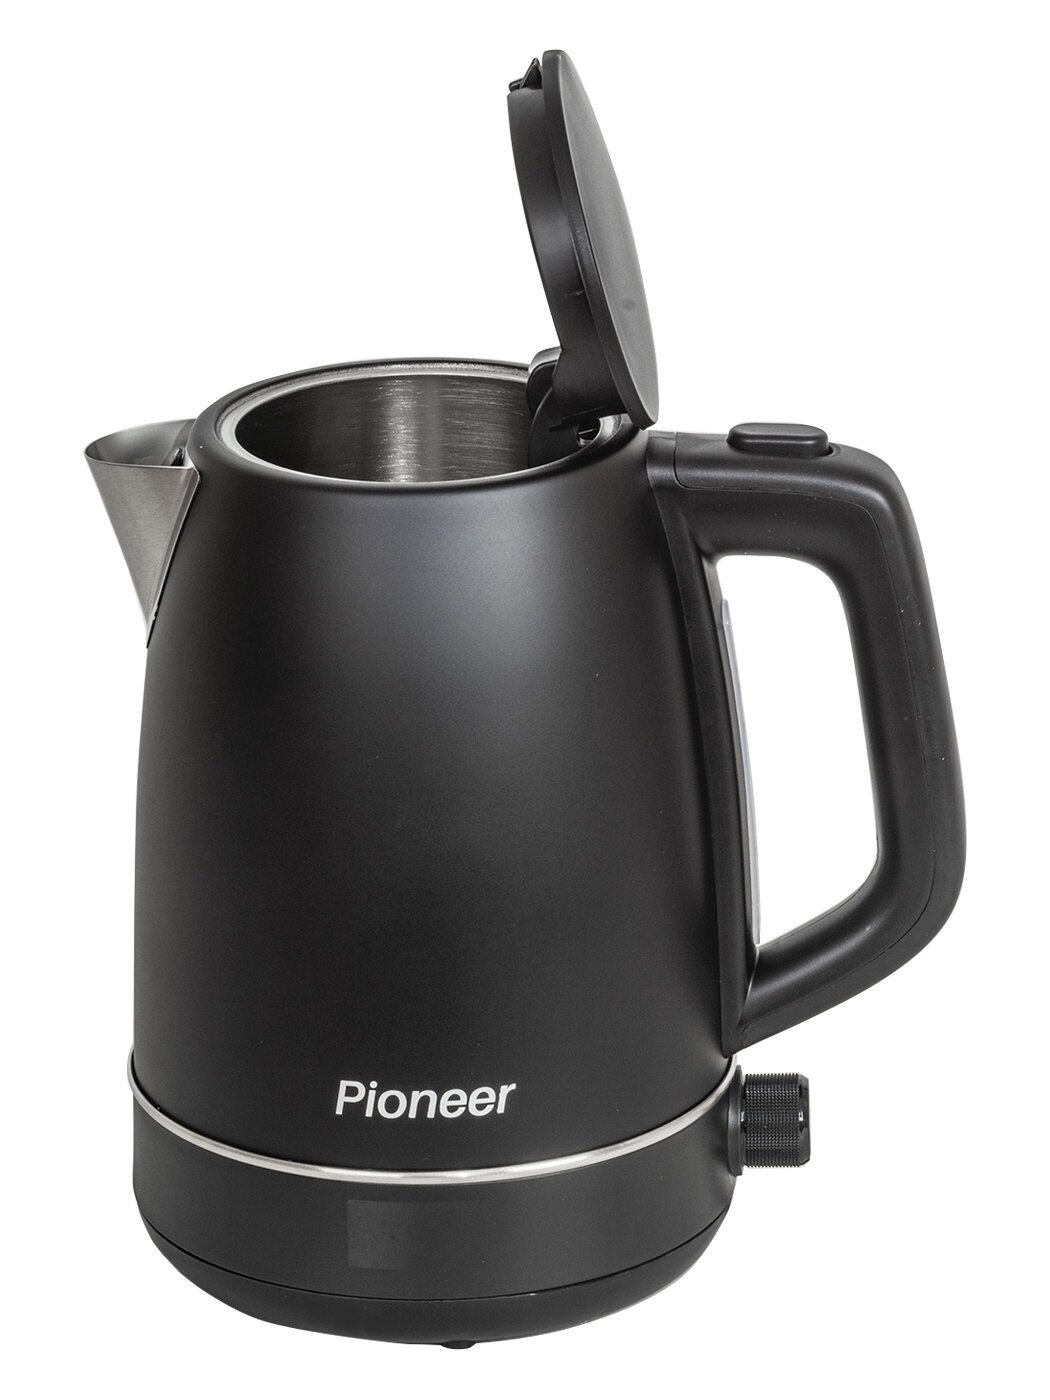 Электрический чайник Pioneer 1,7 л с регулировкой температуры 40-100гр, функцией поддержания тепла, контроллер STRIX, 2200 Вт - фотография № 2